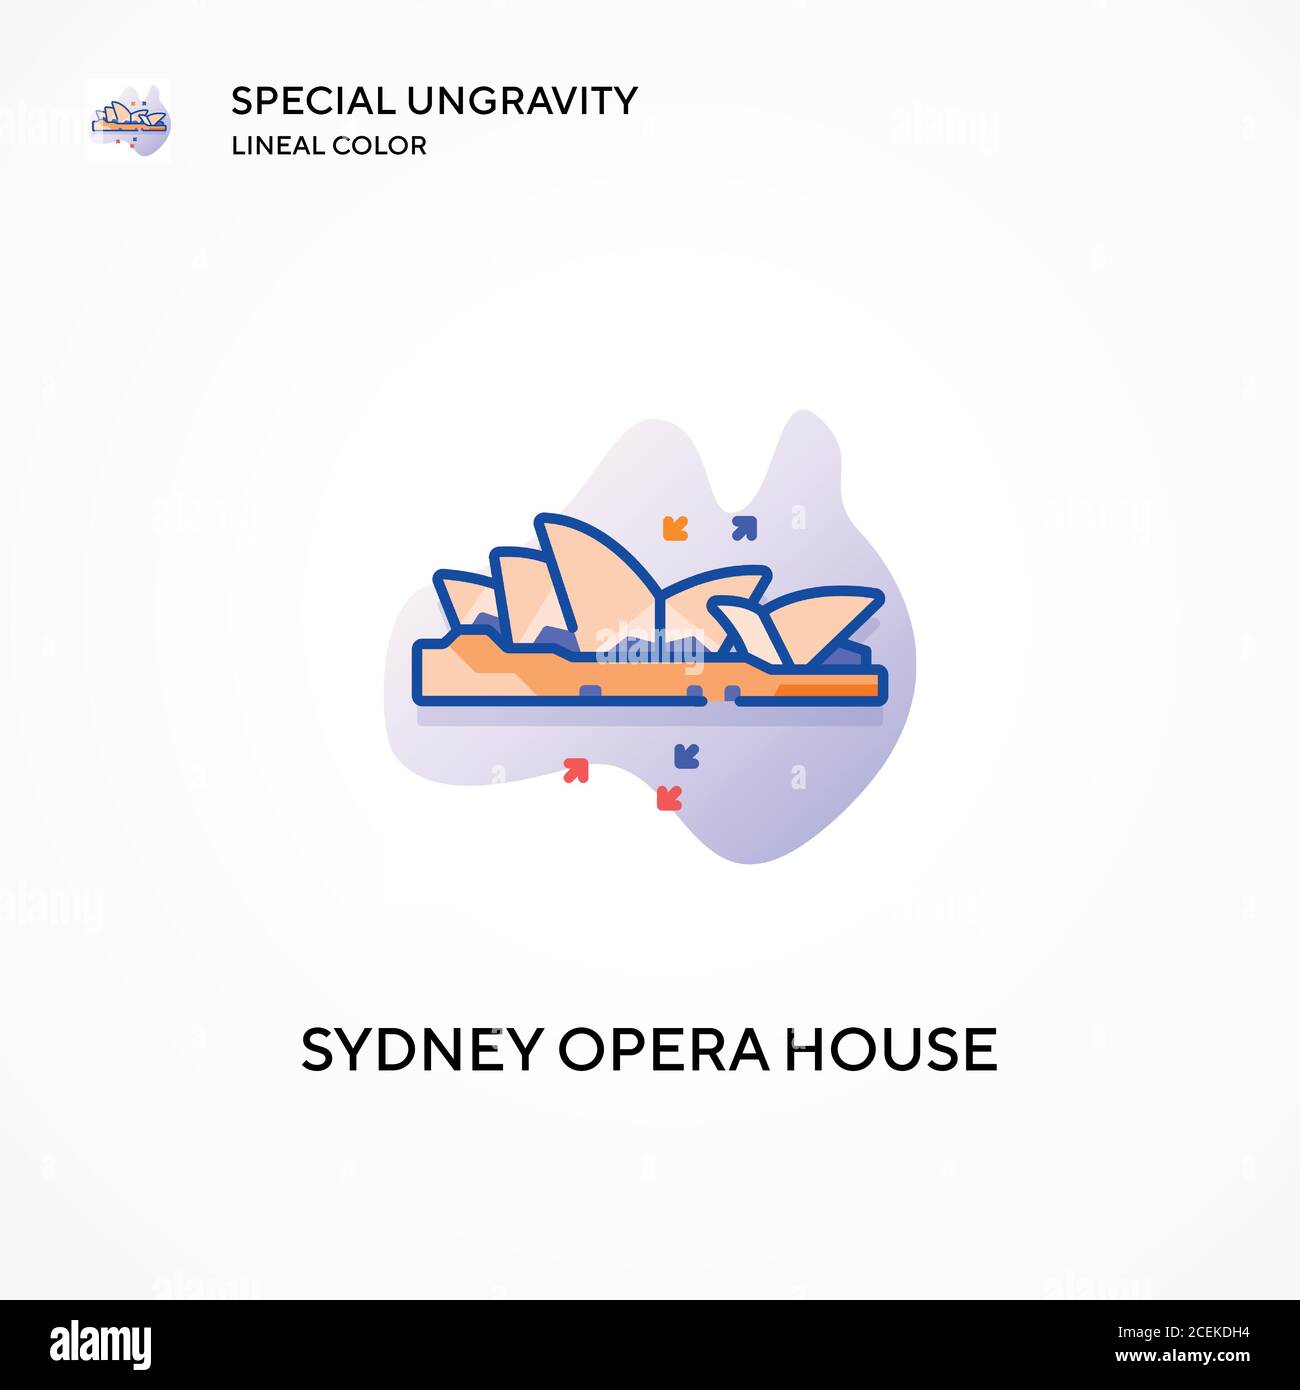 Sydney Opera House spezielle Ungravity Lineal Farbe Ikone. Moderne Vektorgrafik Konzepte. Einfach zu bearbeiten und anzupassen. Stock Vektor